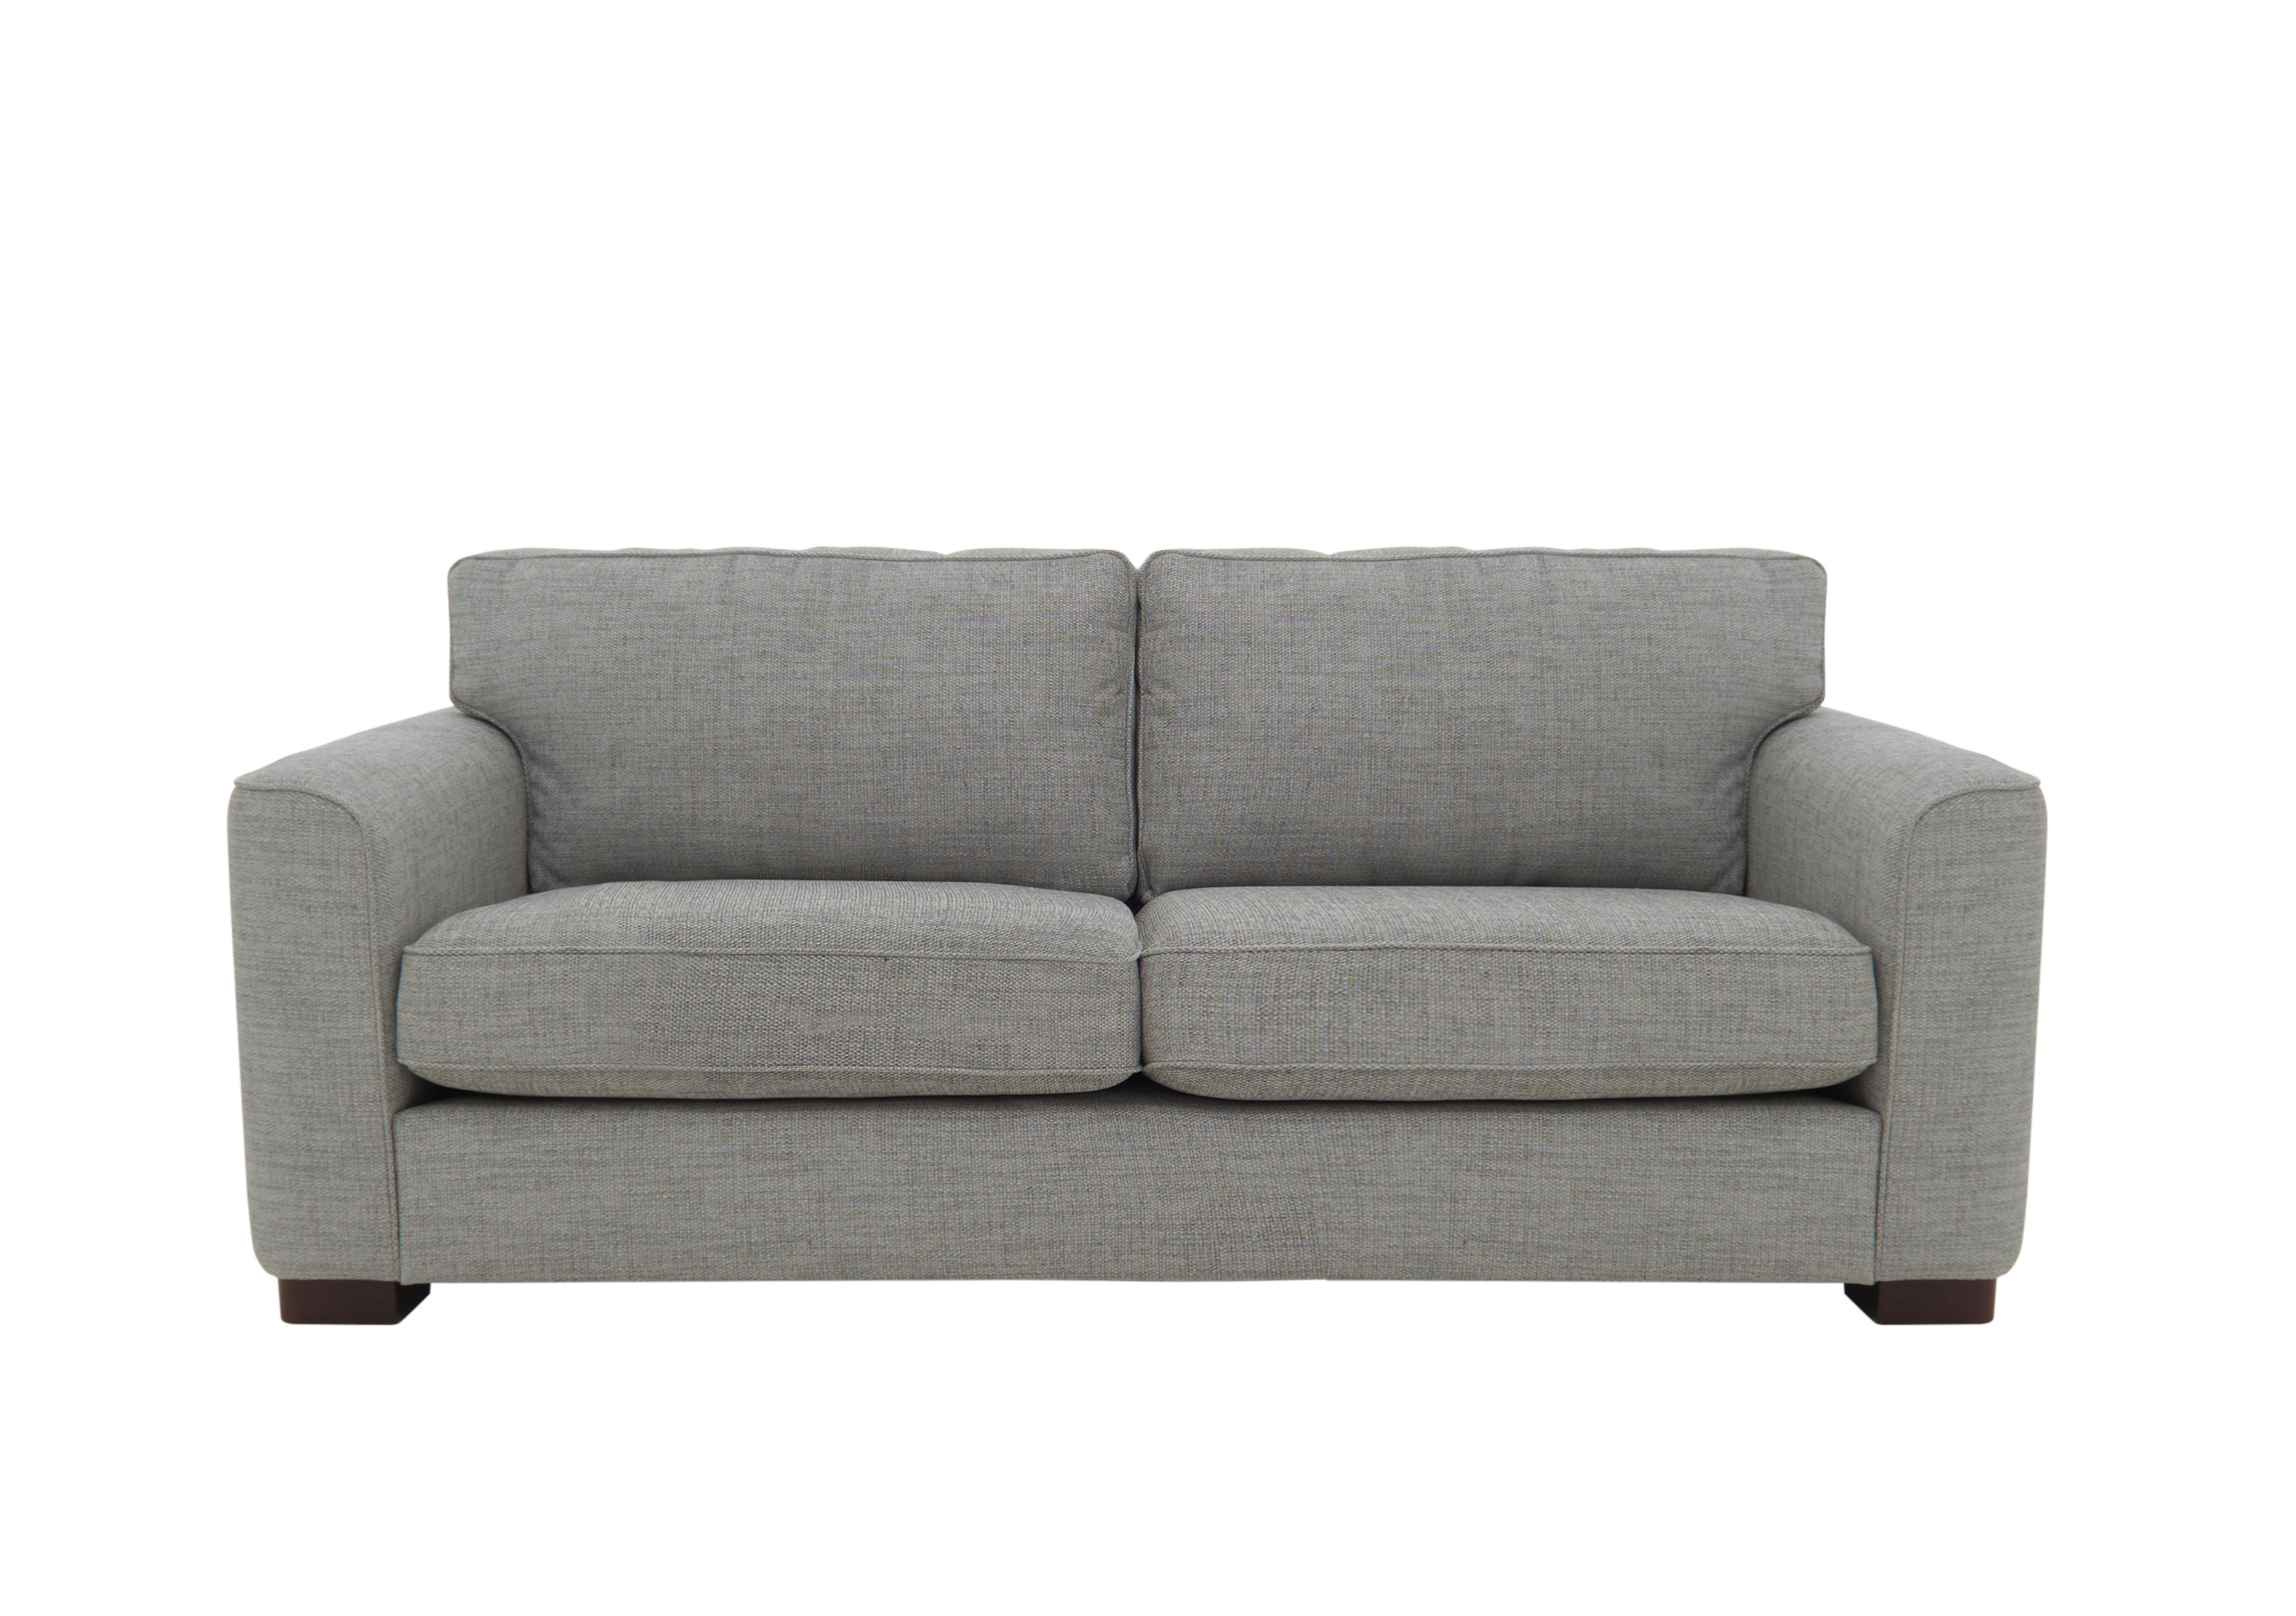 Elora 3 Seater Fabric Sofa in Kento 301 Warm Grey Dbf on Furniture Village